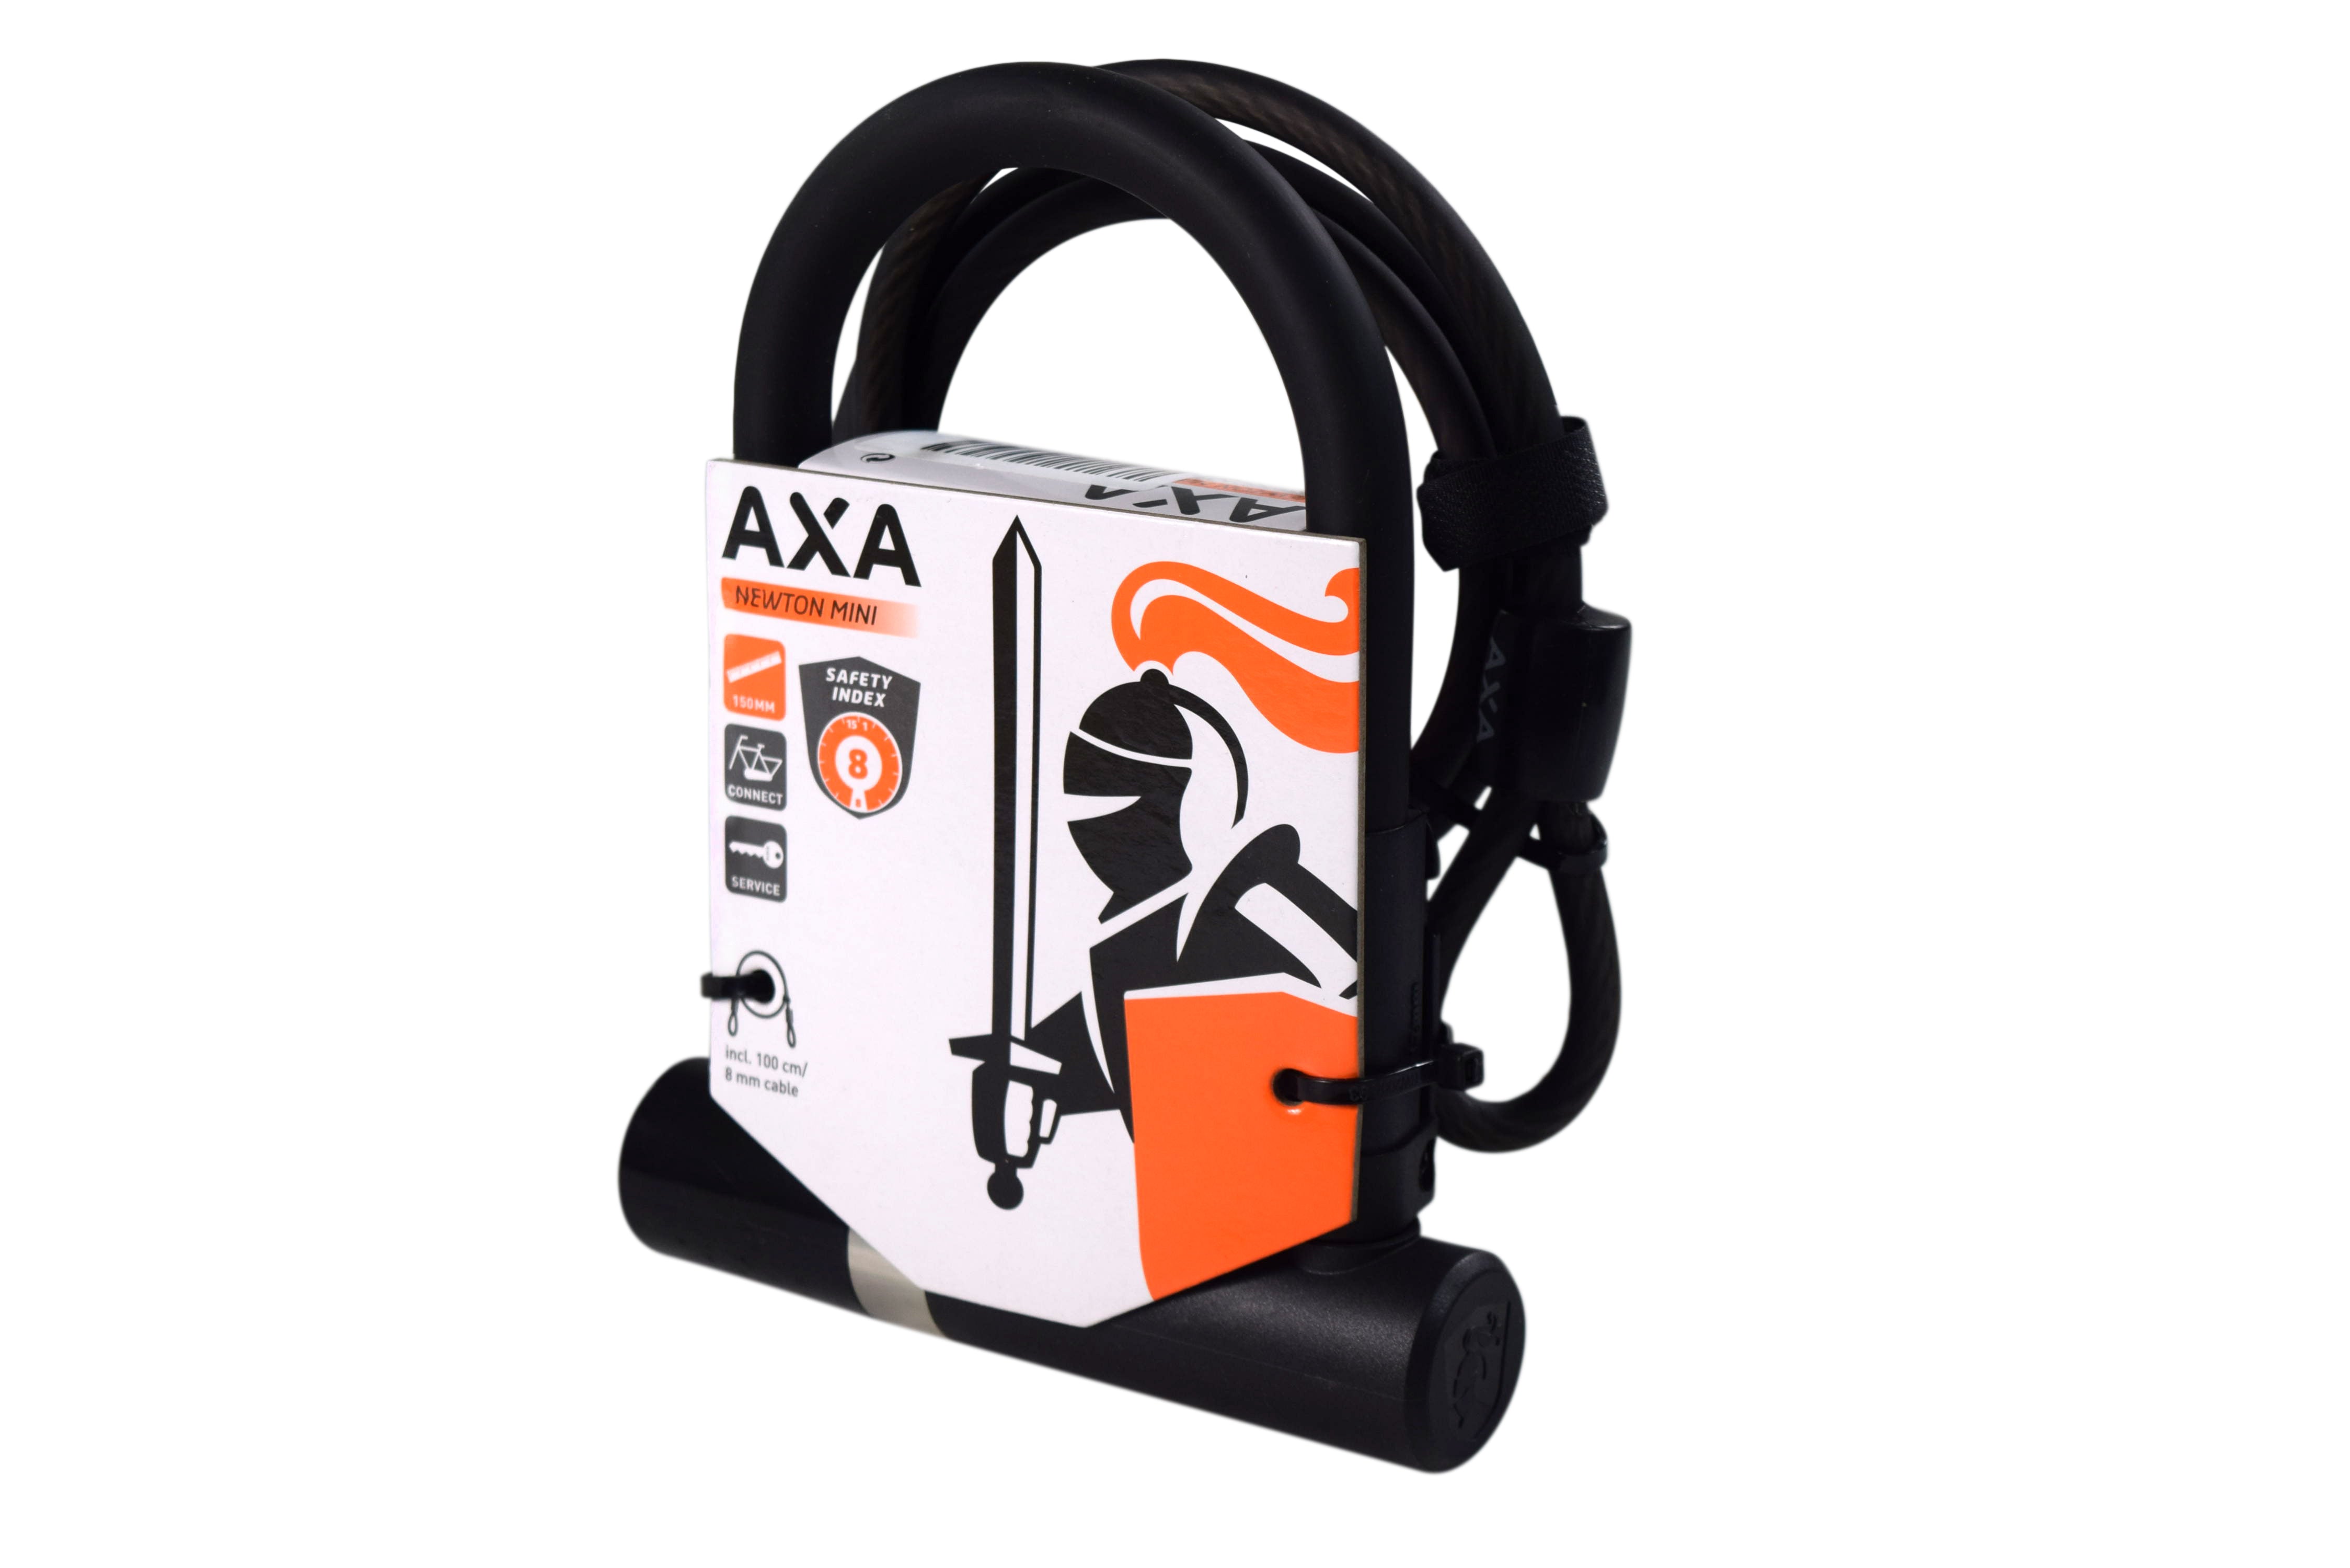 AXA-005155-Newton-Mini-Cable-100-8-image-2